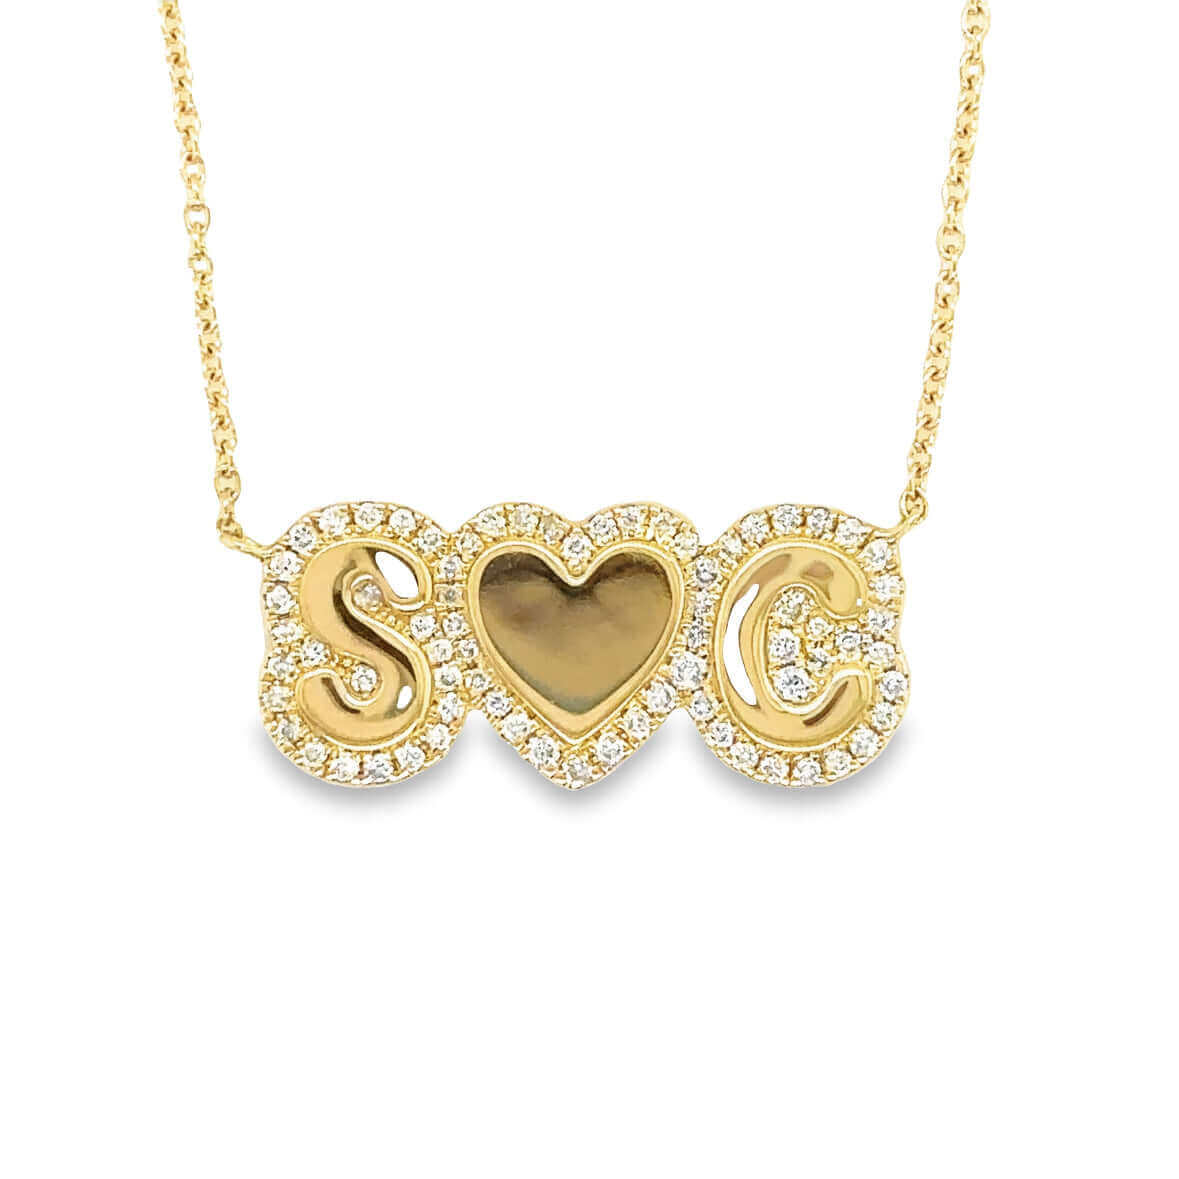 14K Gold Personalized Diamond Cloud Nameplate Necklace - Necklaces - Izakov Diamonds + Fine Jewelry